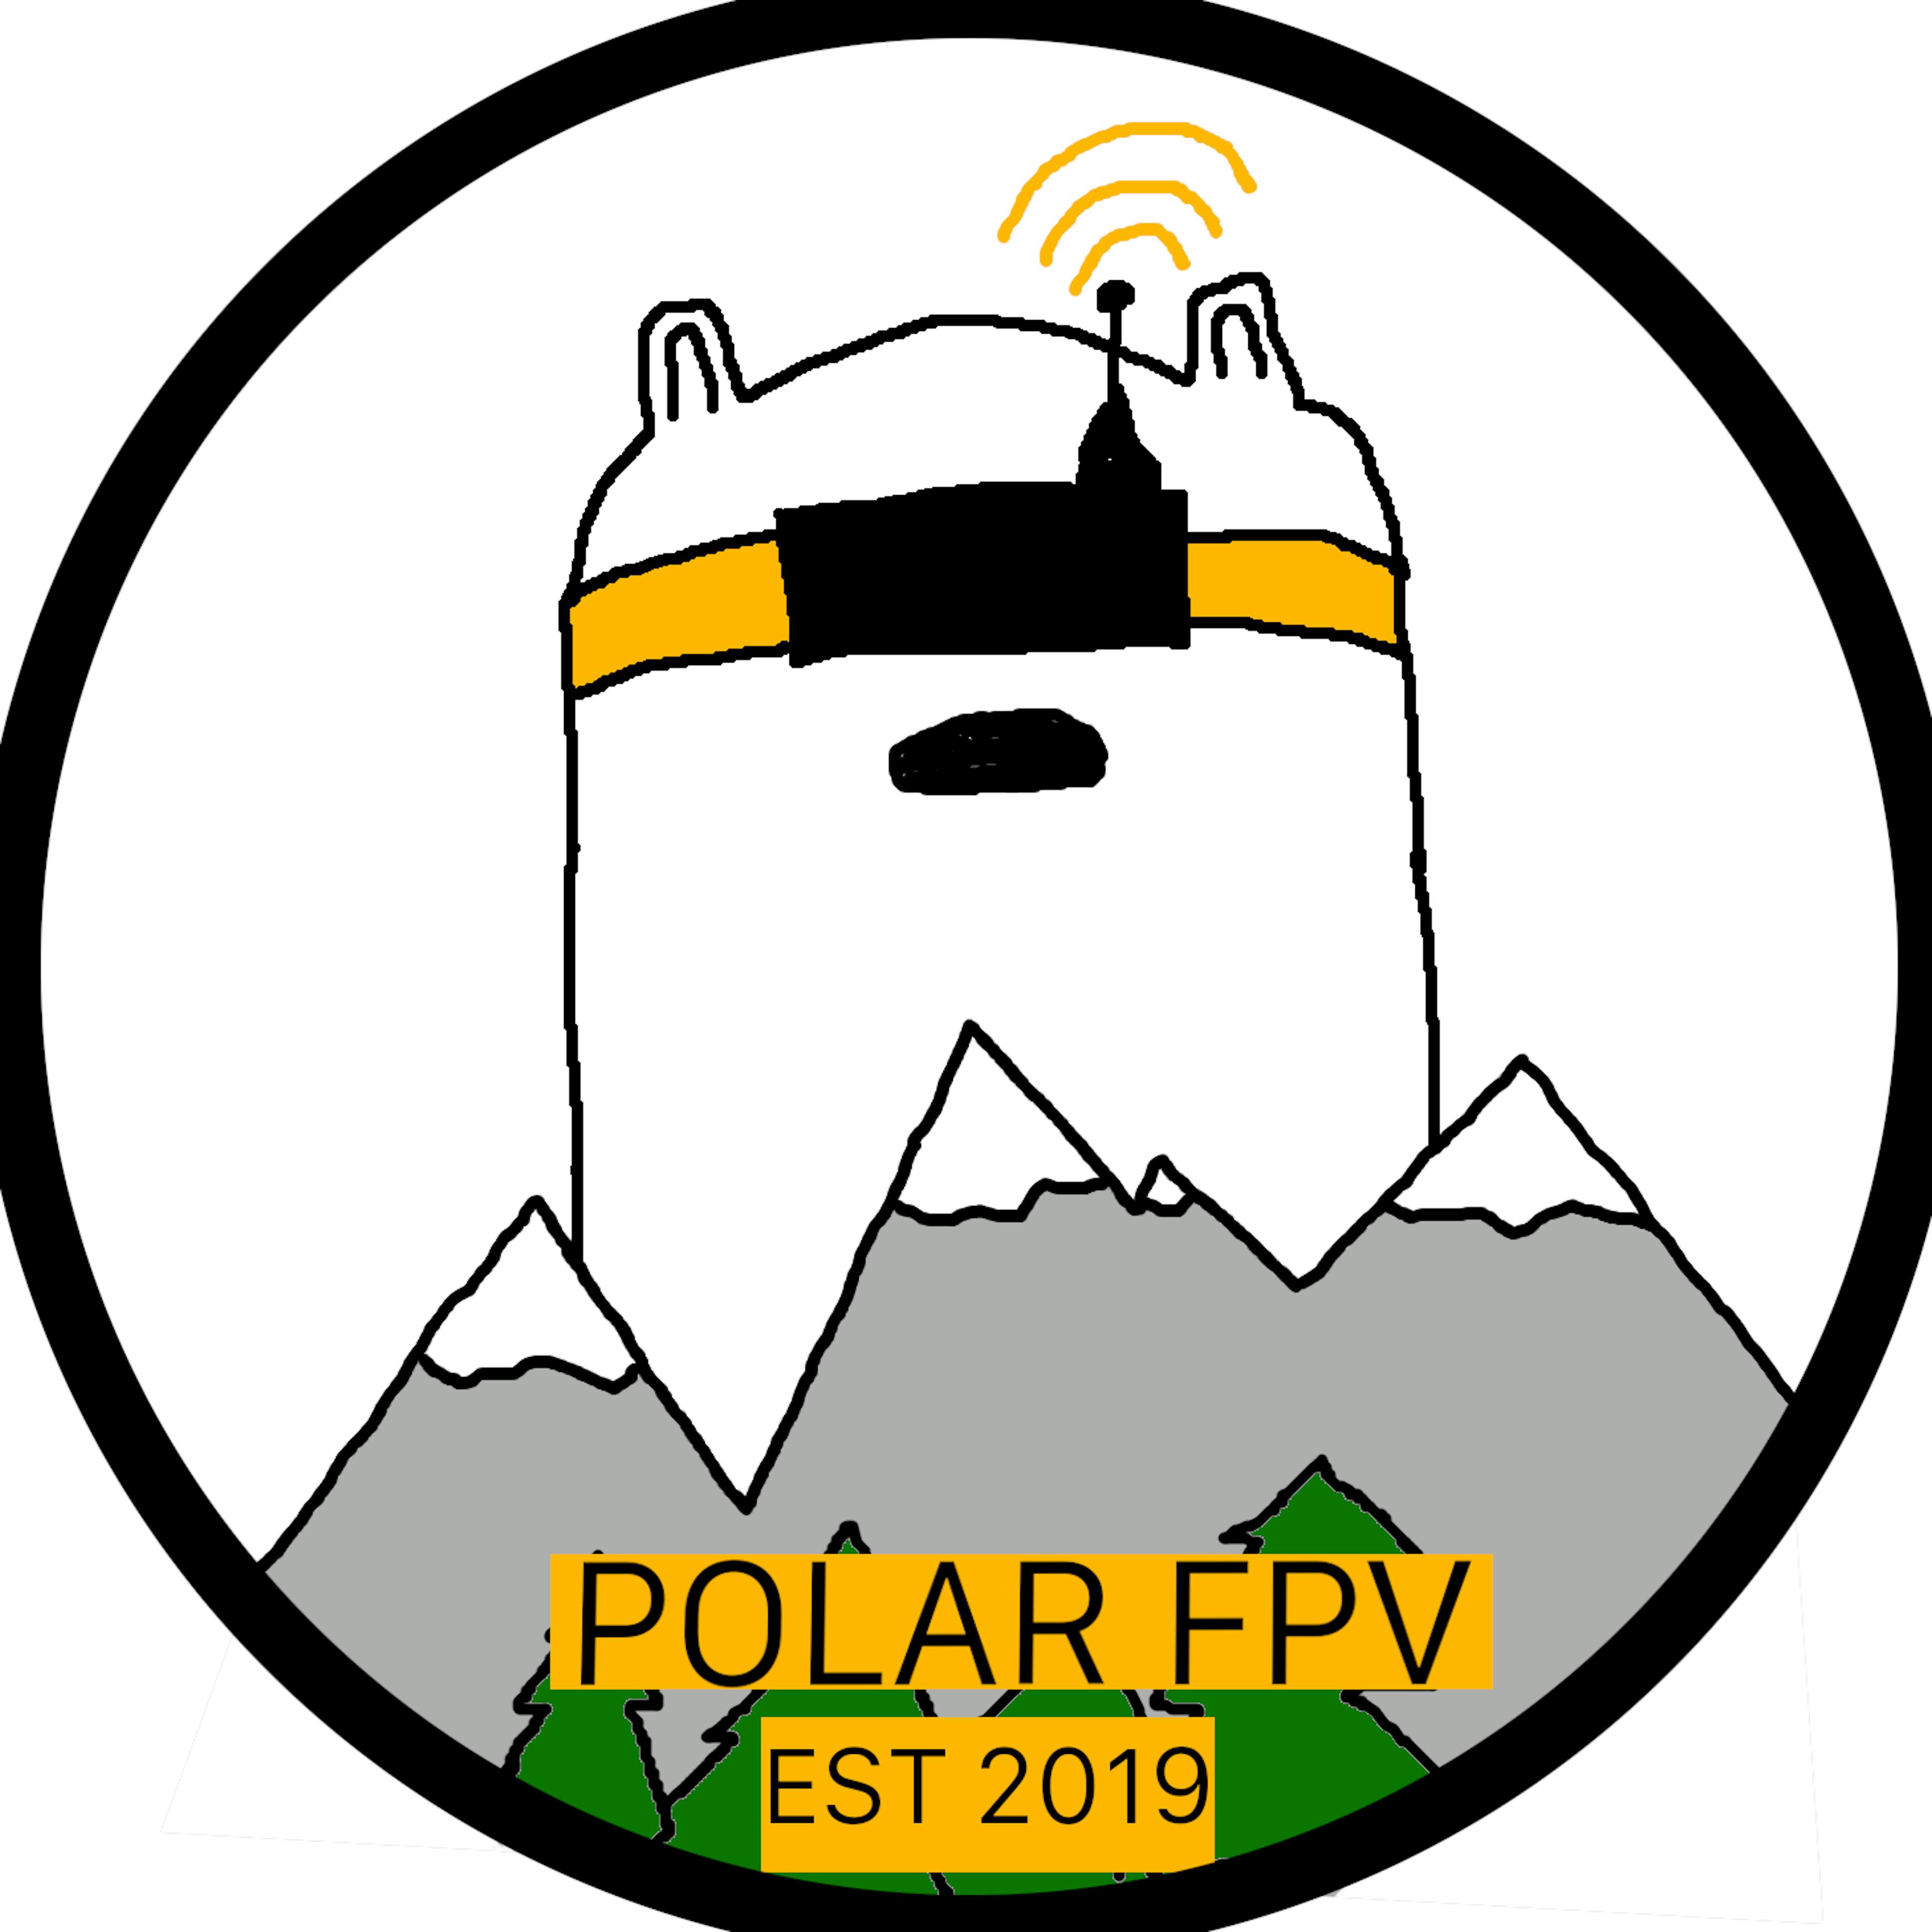 Polar FPV